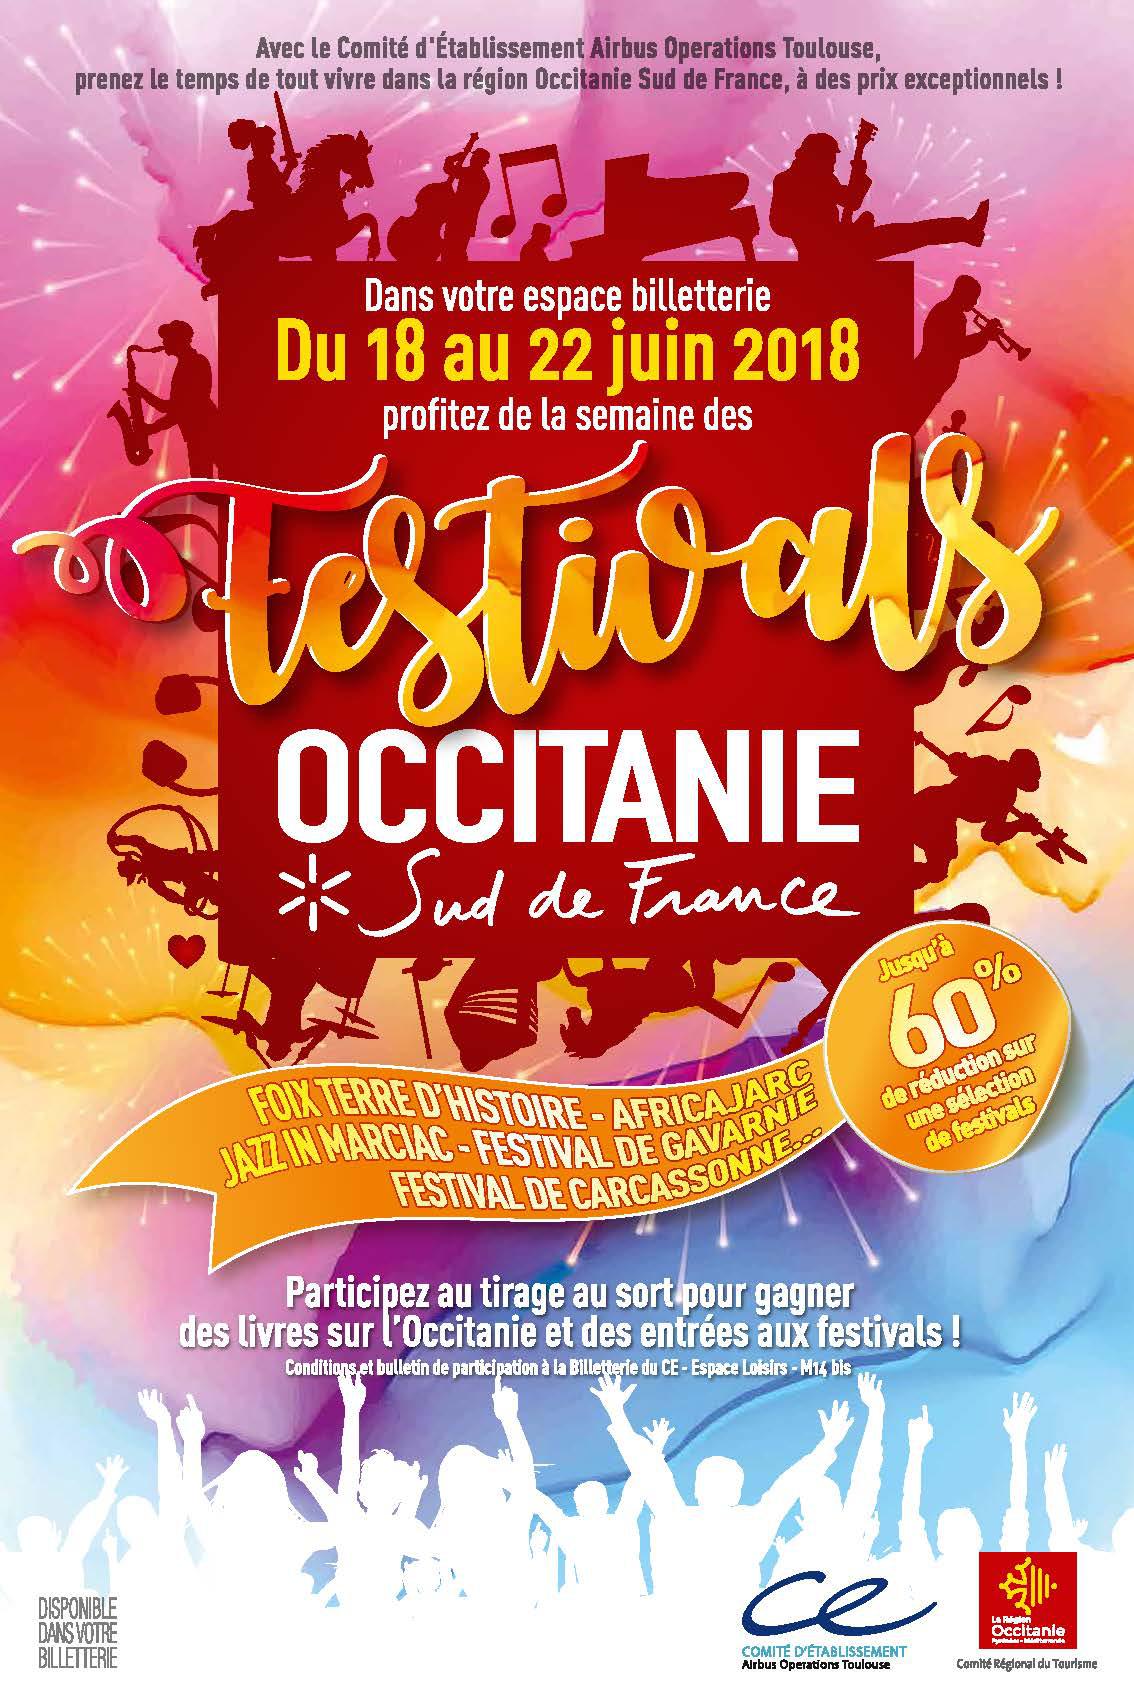 Festivals Occitanie